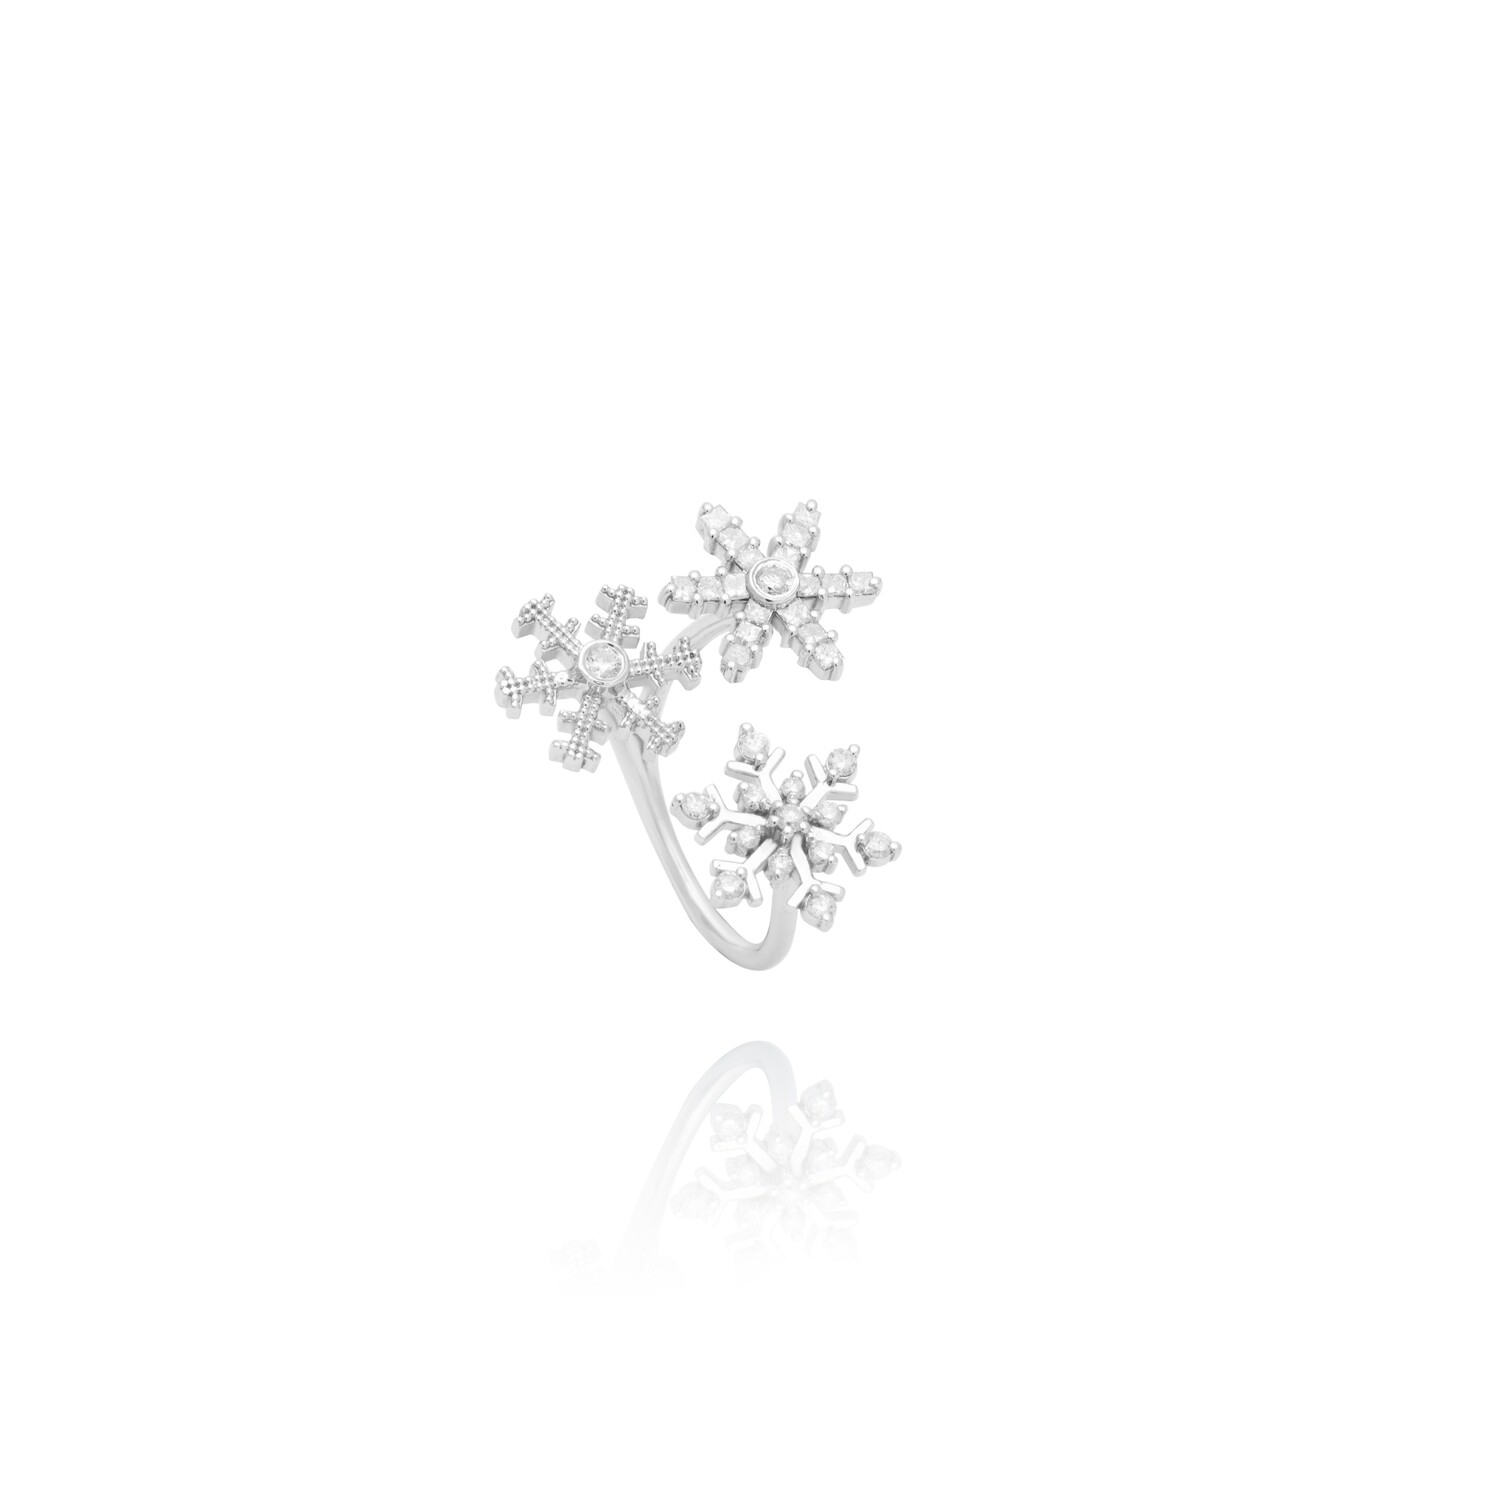 Snowflake Diamond Ring with Princess Diamond